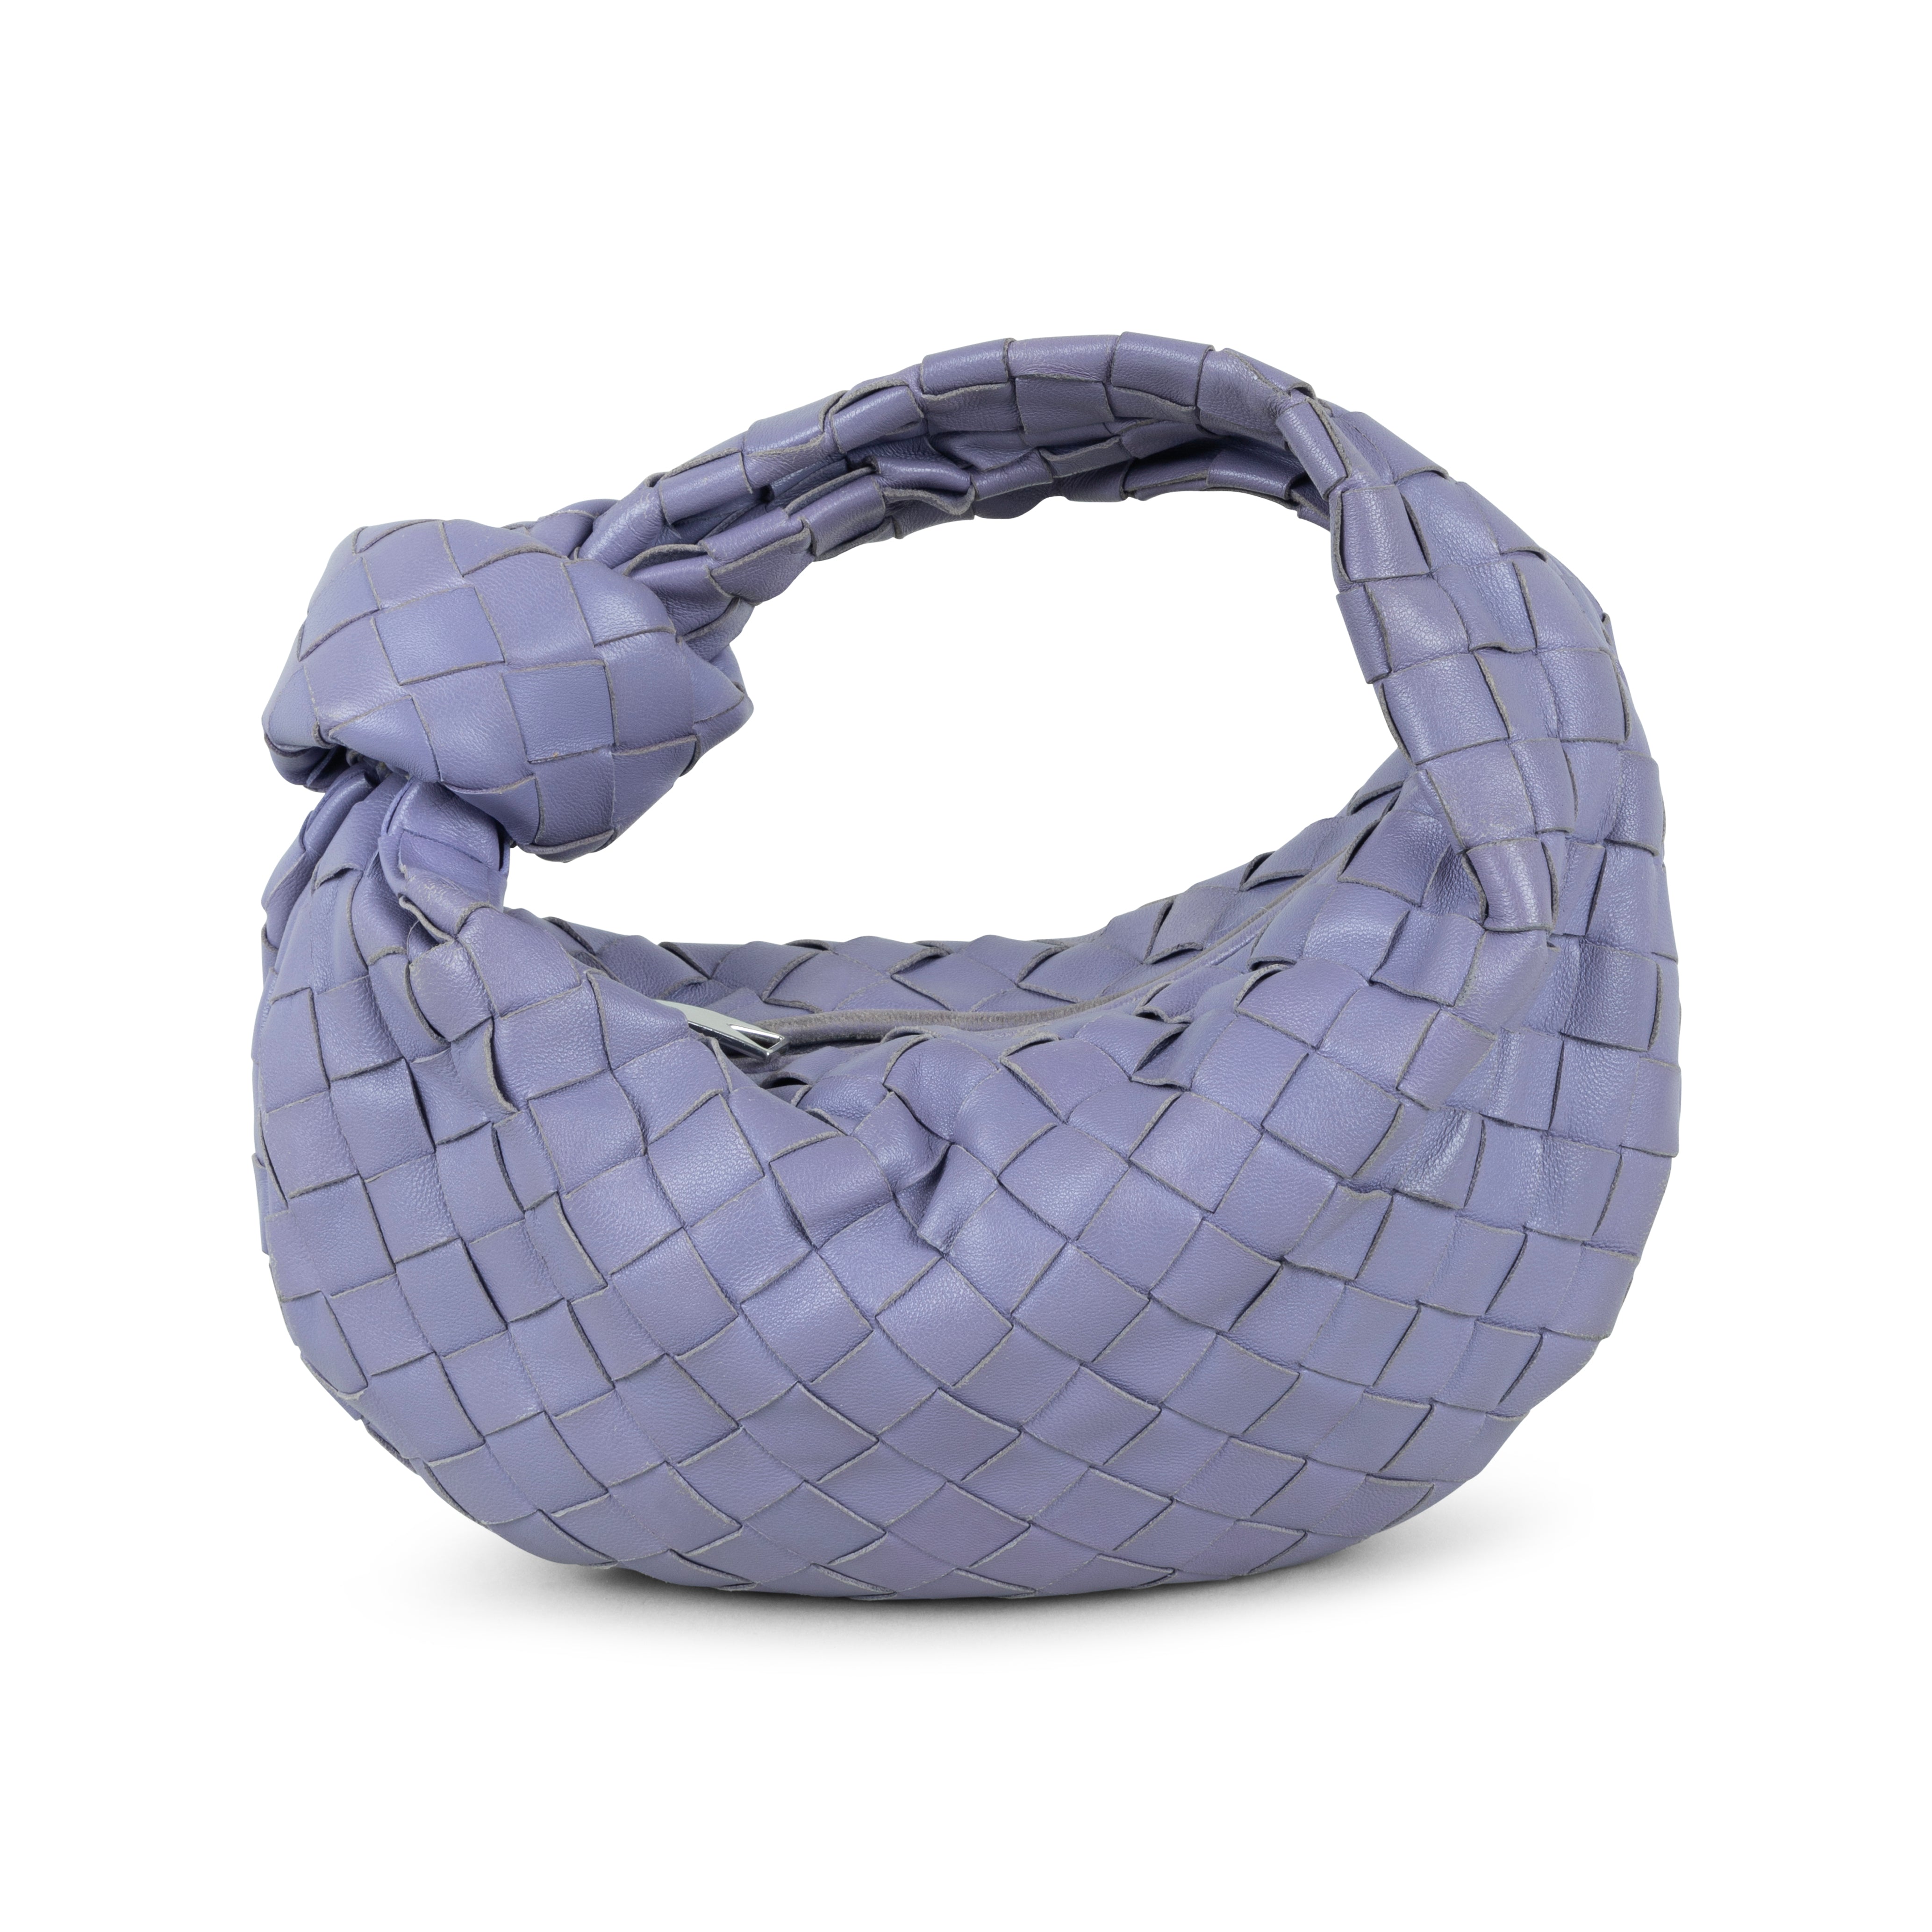 LOEWE Raffia Square Small Basket Tote Bag Natural Tan 1241825